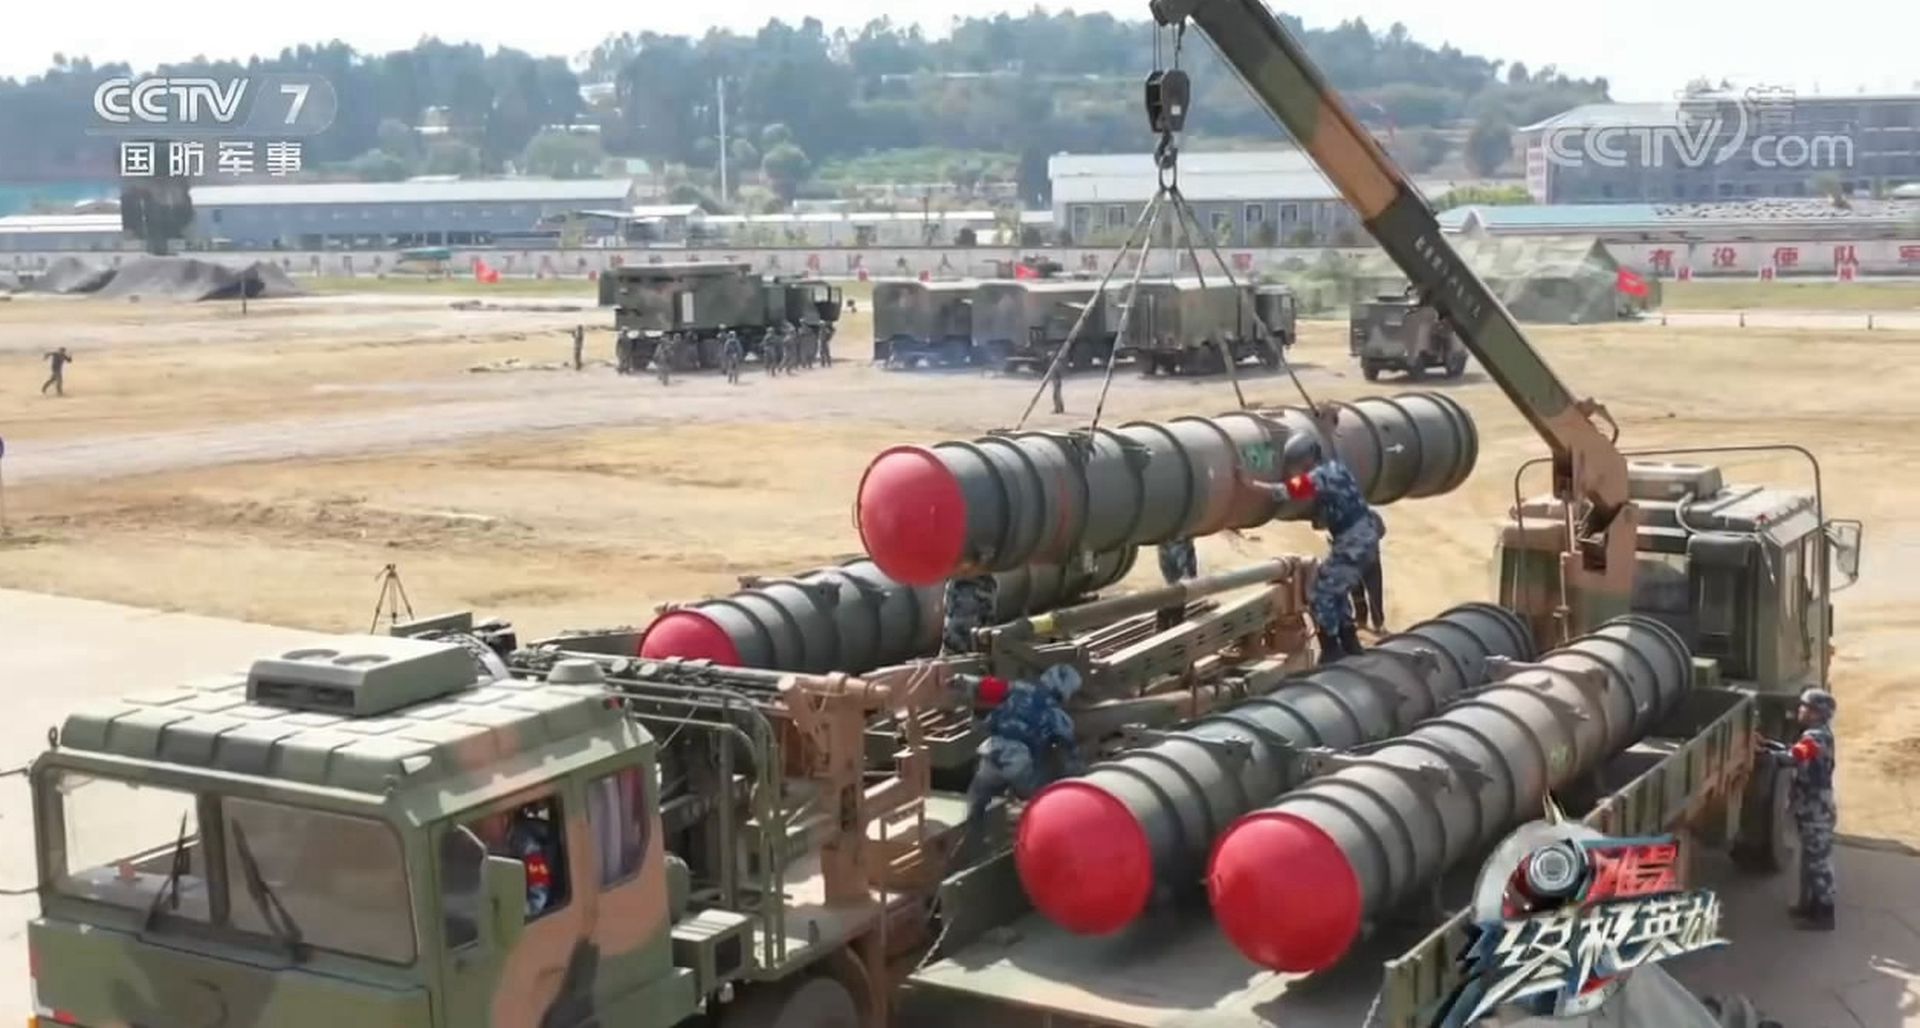 红旗-22导弹的装填：先由运输车装载导弹至装填车旁，然后将导弹吊装至装填车，最后由装填车一次性将四枚导弹装填至发射车上​。（中国央视截图）